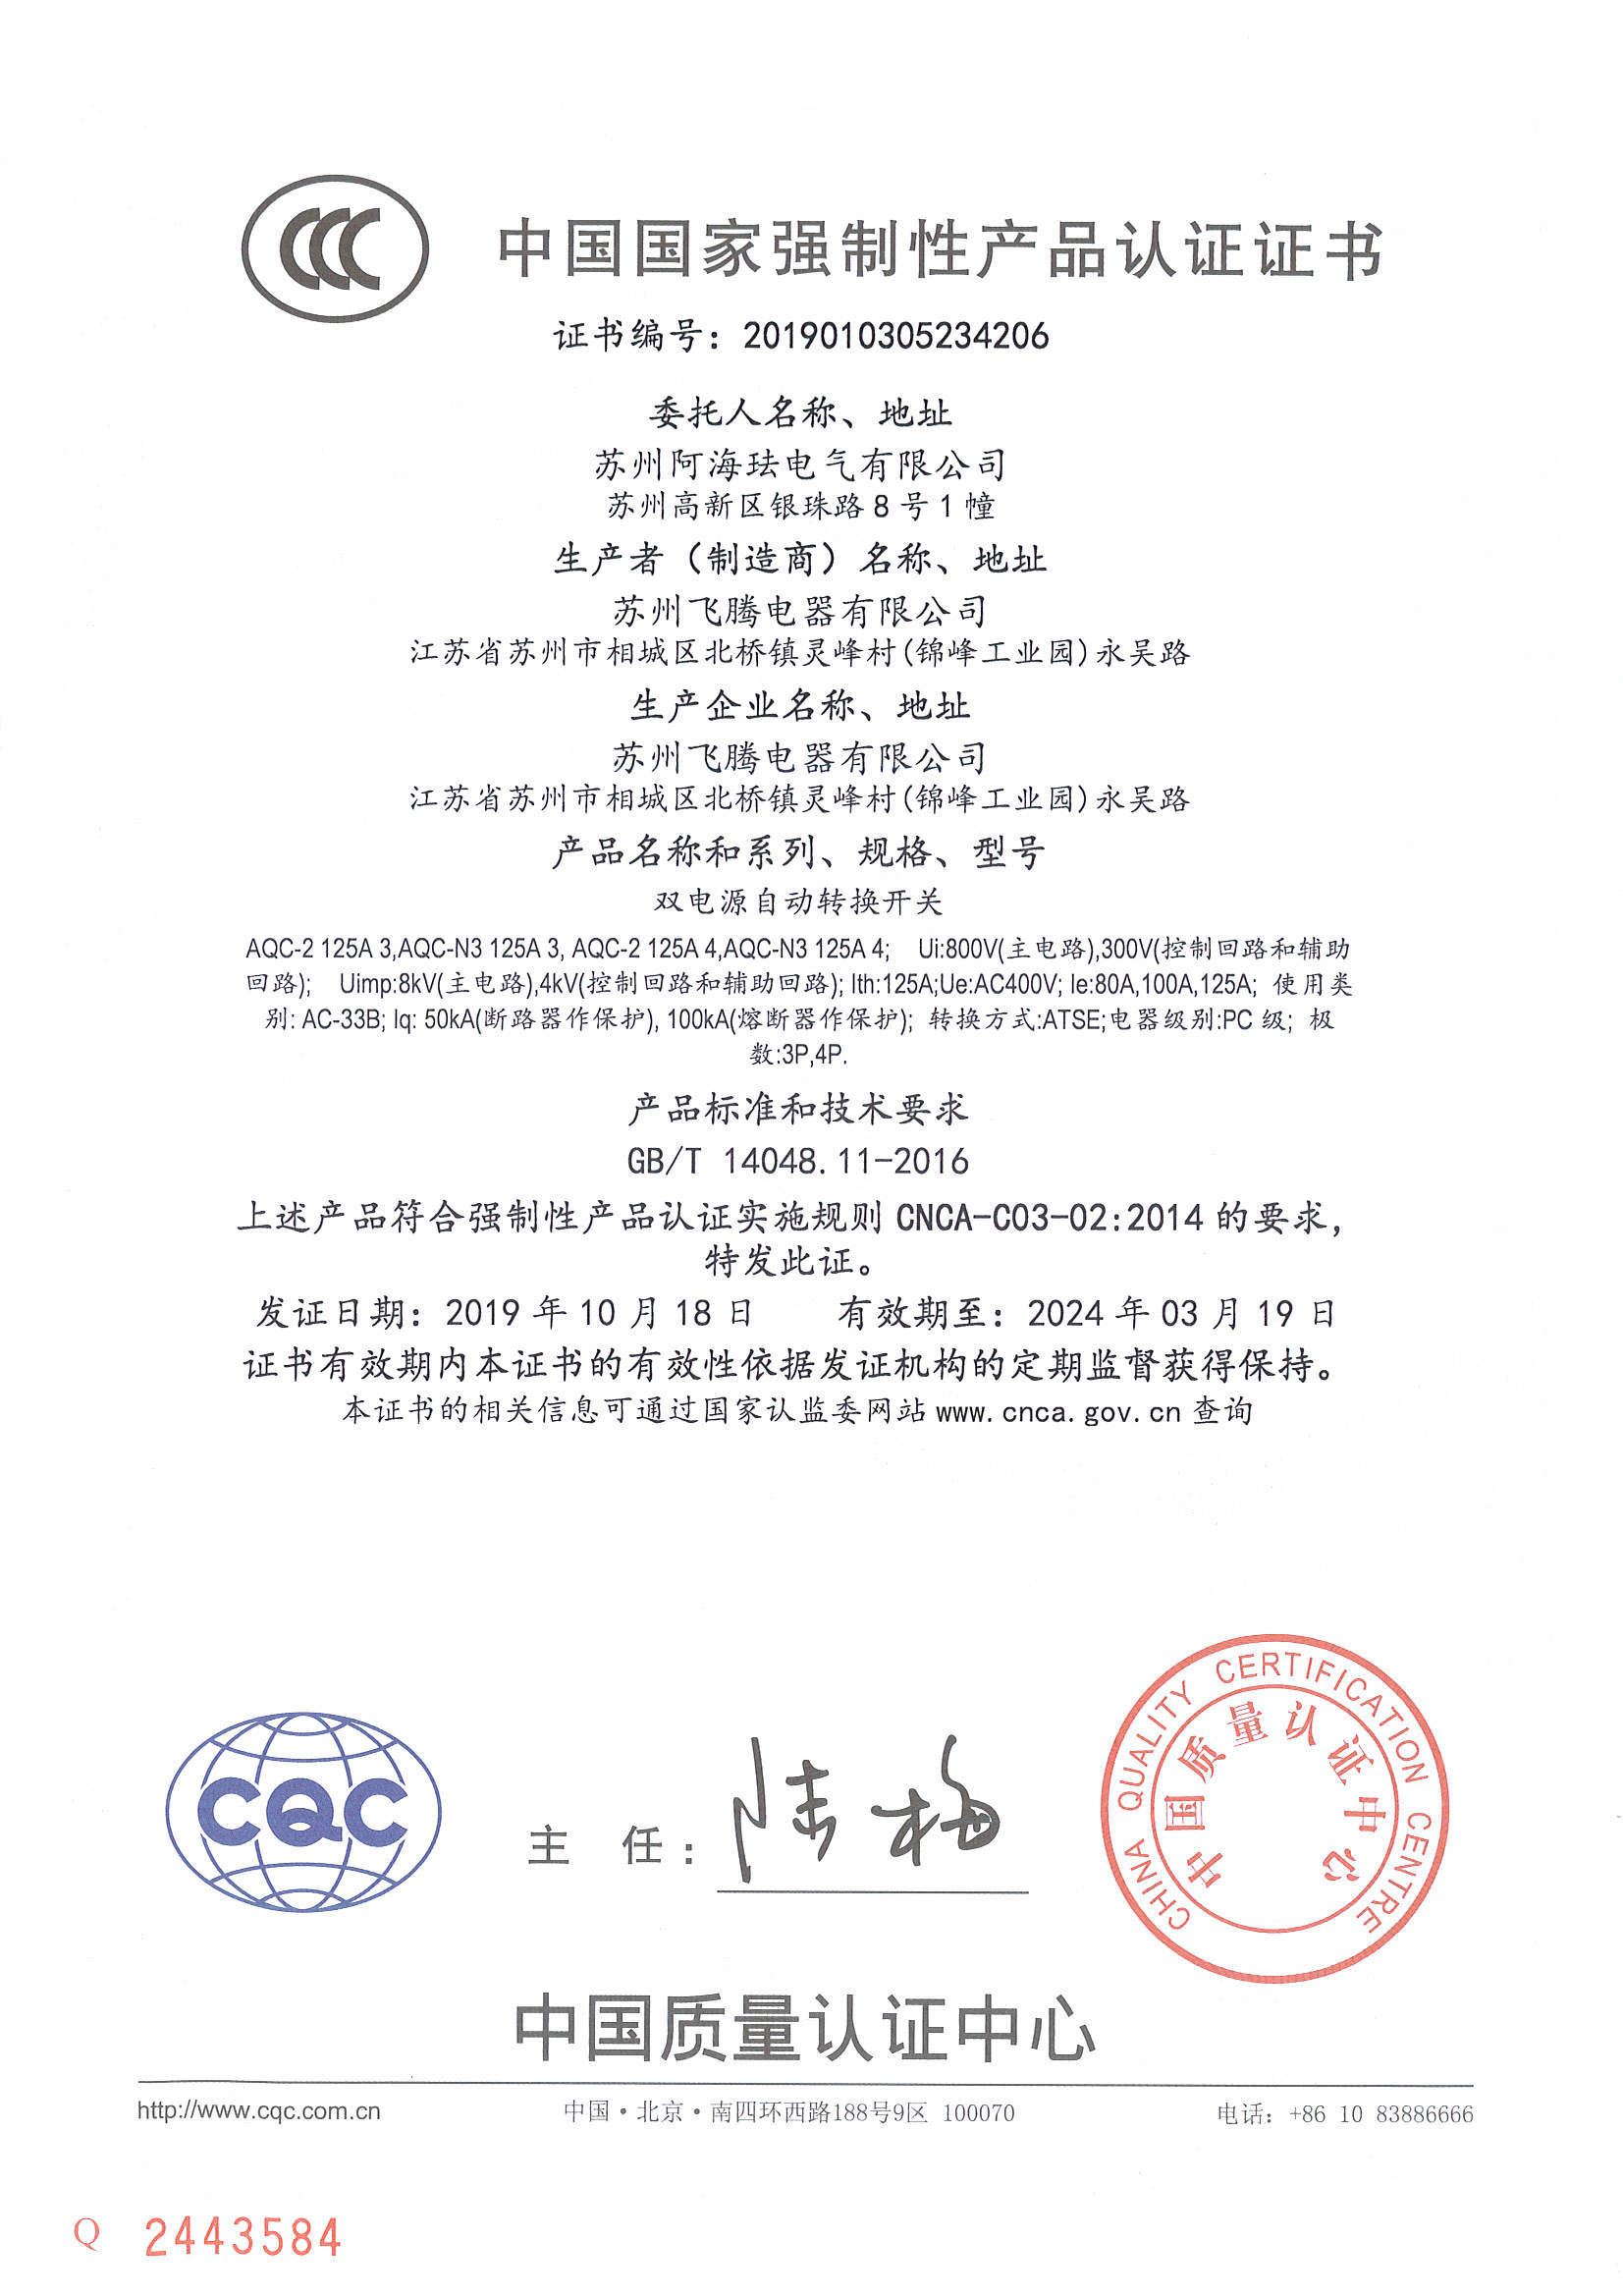 AQC125 CCC Certificate